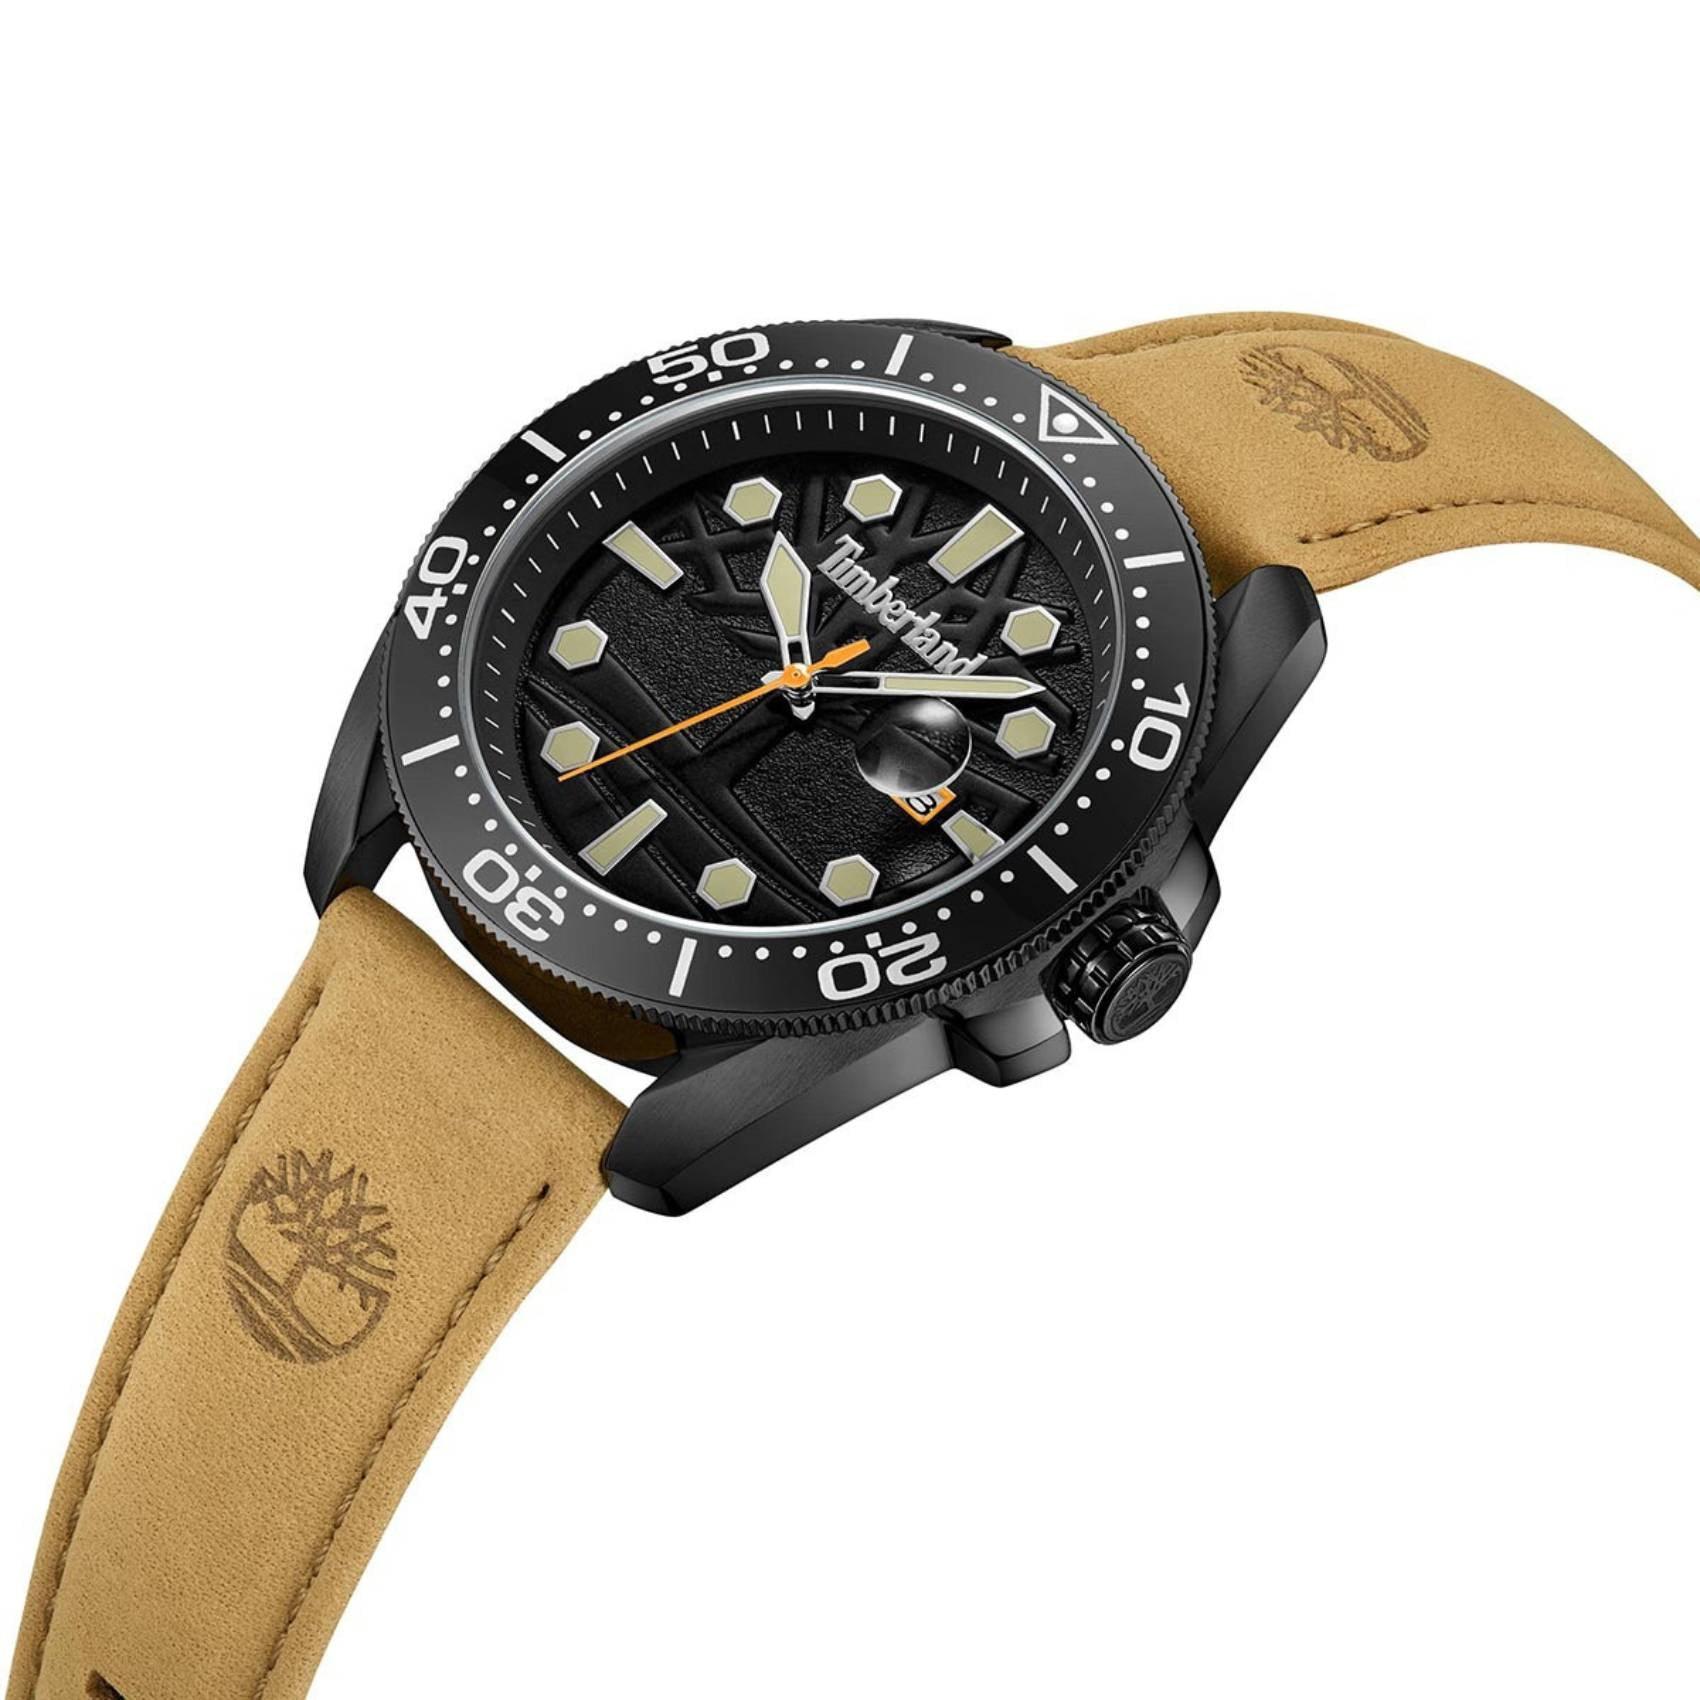 Ρολόι Timberland Carrigan TDWGB2230601 με ταμπά δερμάτινο λουρί, μαύρο καντράν και κάσα διαμέτρου 44mm με ένδειξη ημερομηνίας.